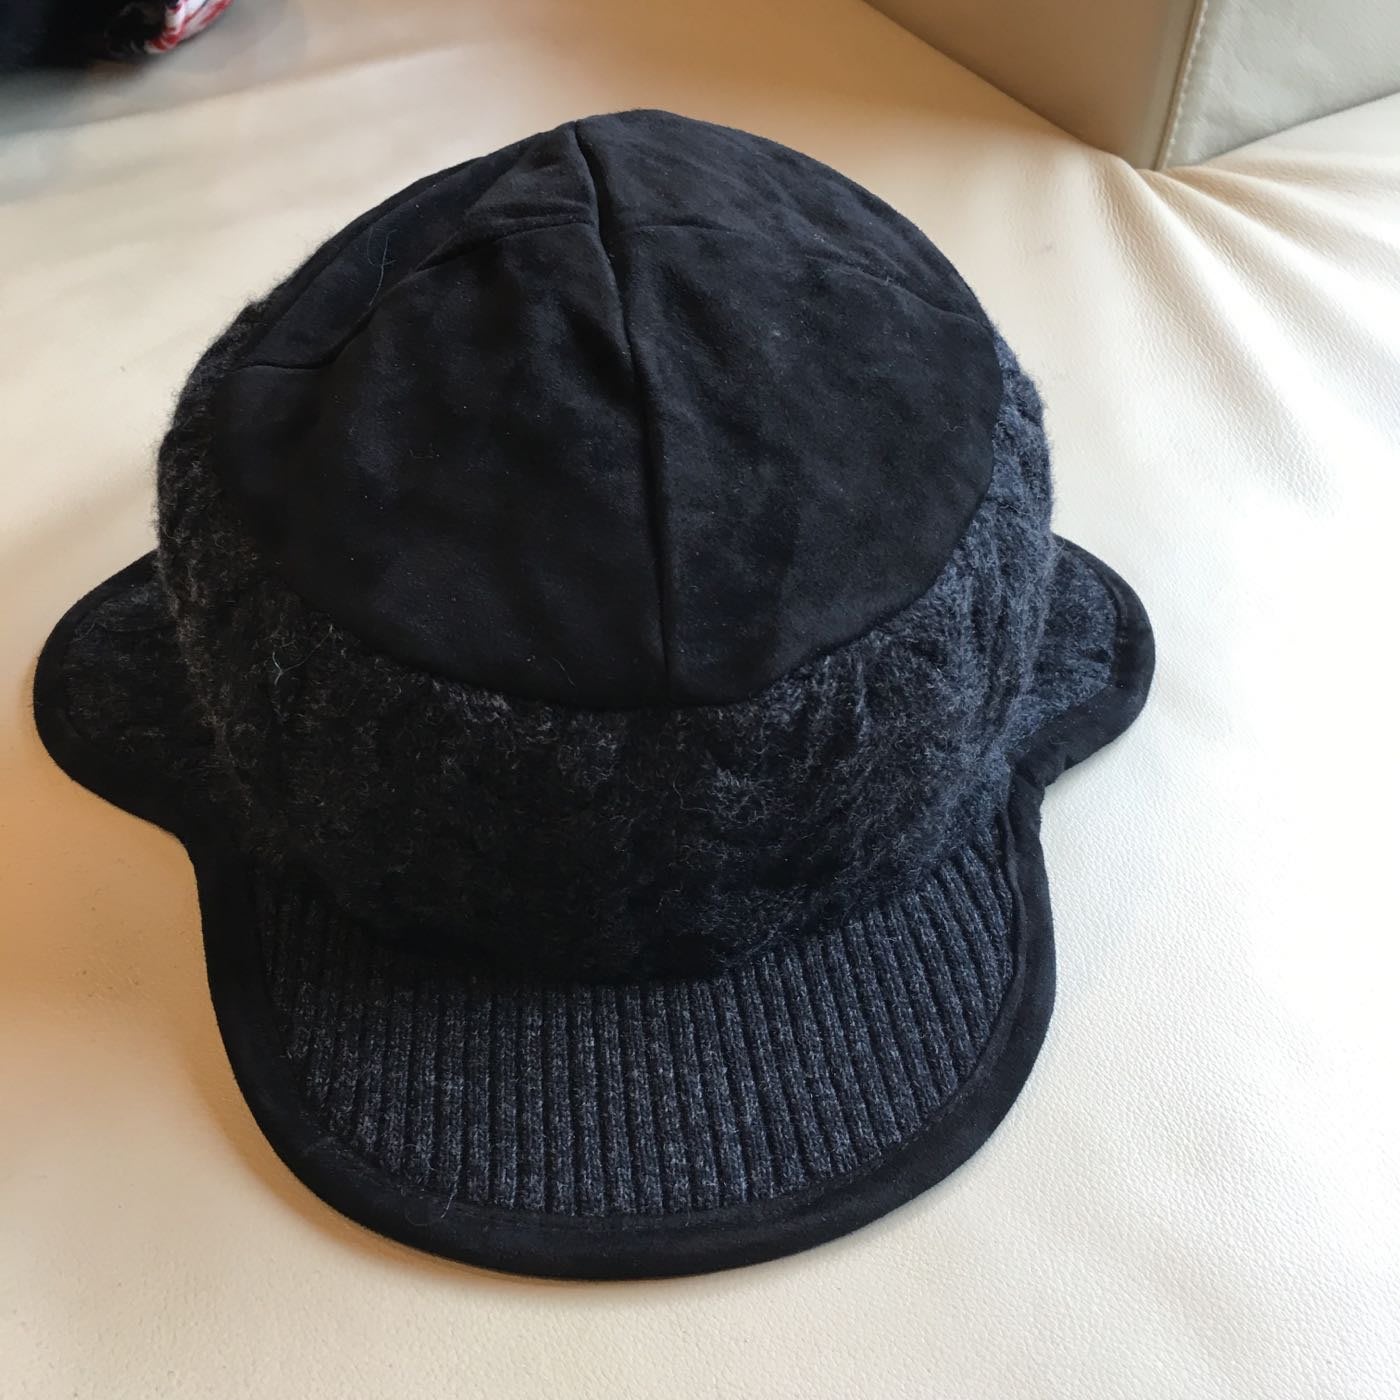 夏上新包头帽妈妈帽时尚休闲遮白发帽老人帽方便弹力小帽防风帽-淘宝网